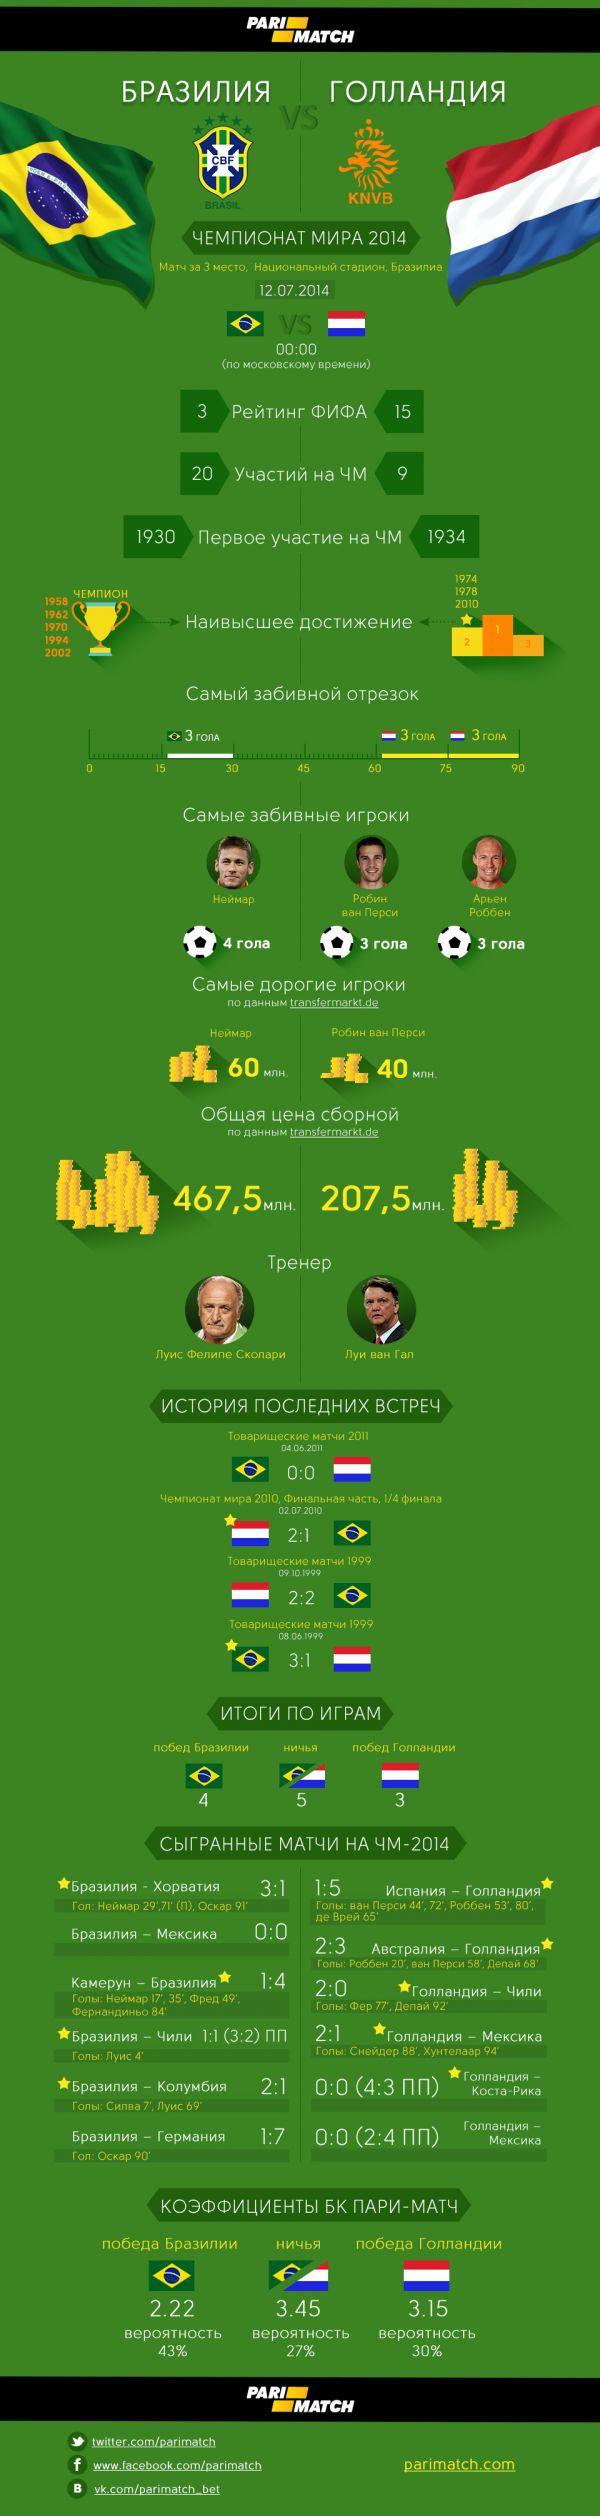 infographic_braziliya_golandiya.jpg